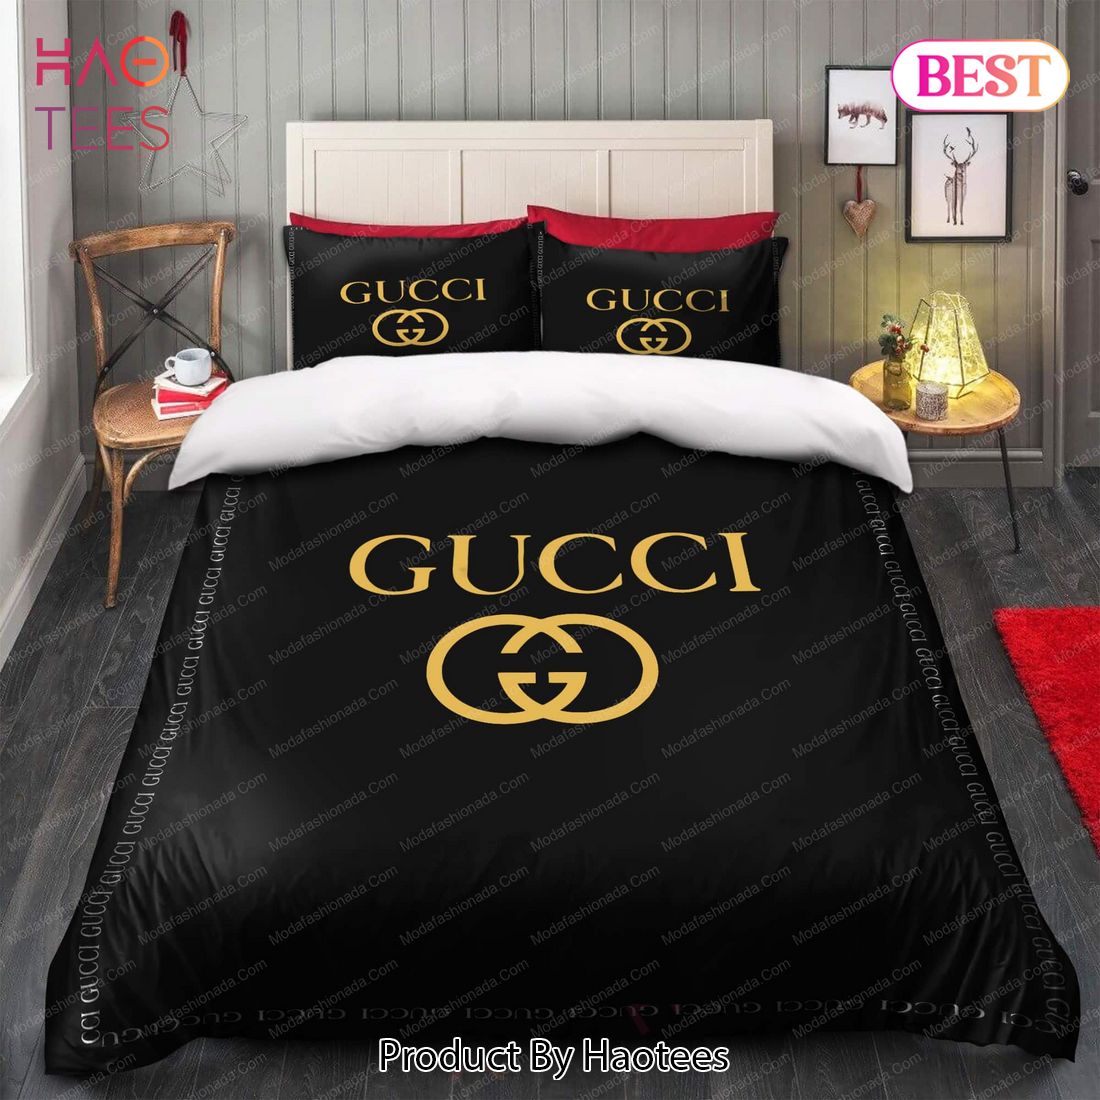 At blokere dommer Symposium Buy Black Gucci Bedding Sets Bed Sets, Bedroom Sets, Comforter Sets, Duvet  Cover, Bedspread